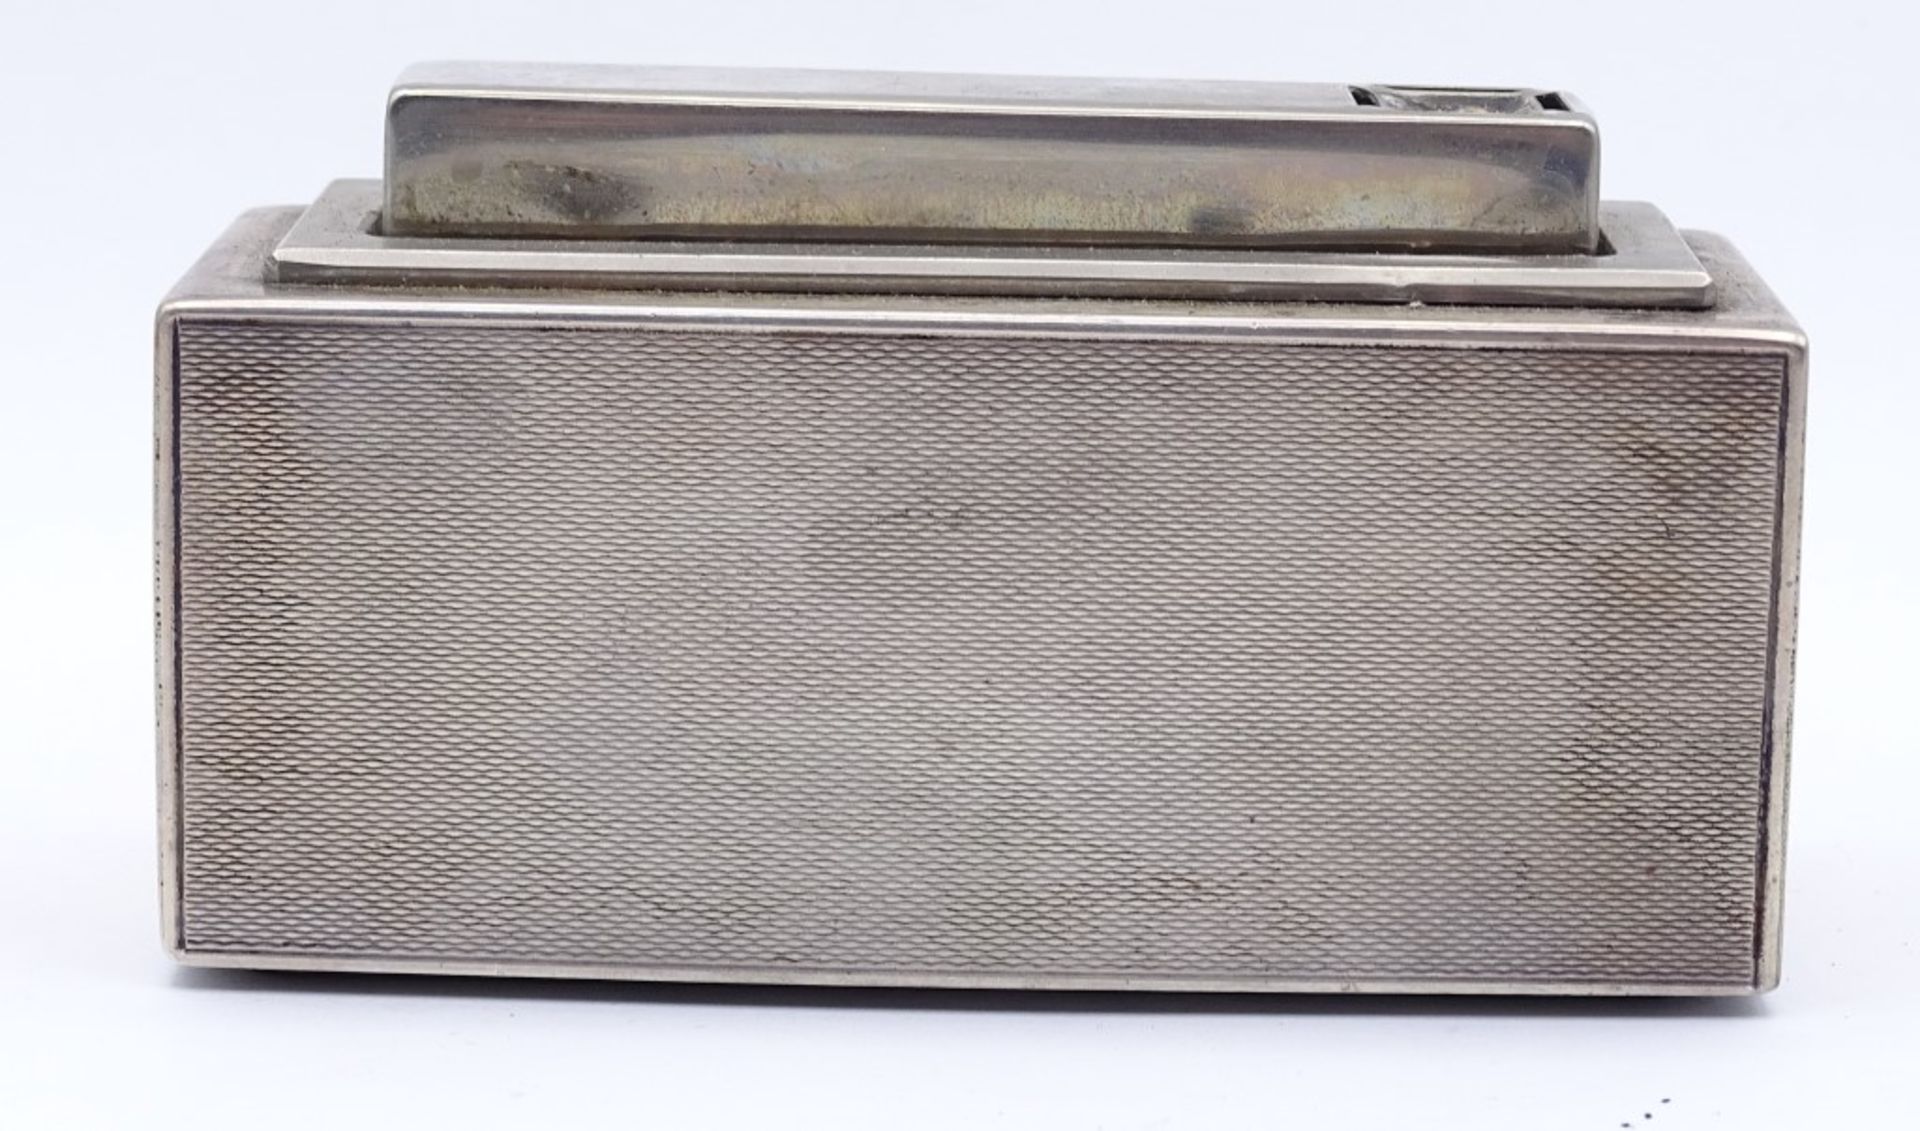 Tischfeuerzeug in Sterling Silber Gehäuse,Funktionstüchtig,L-10,4cm,H-6,0